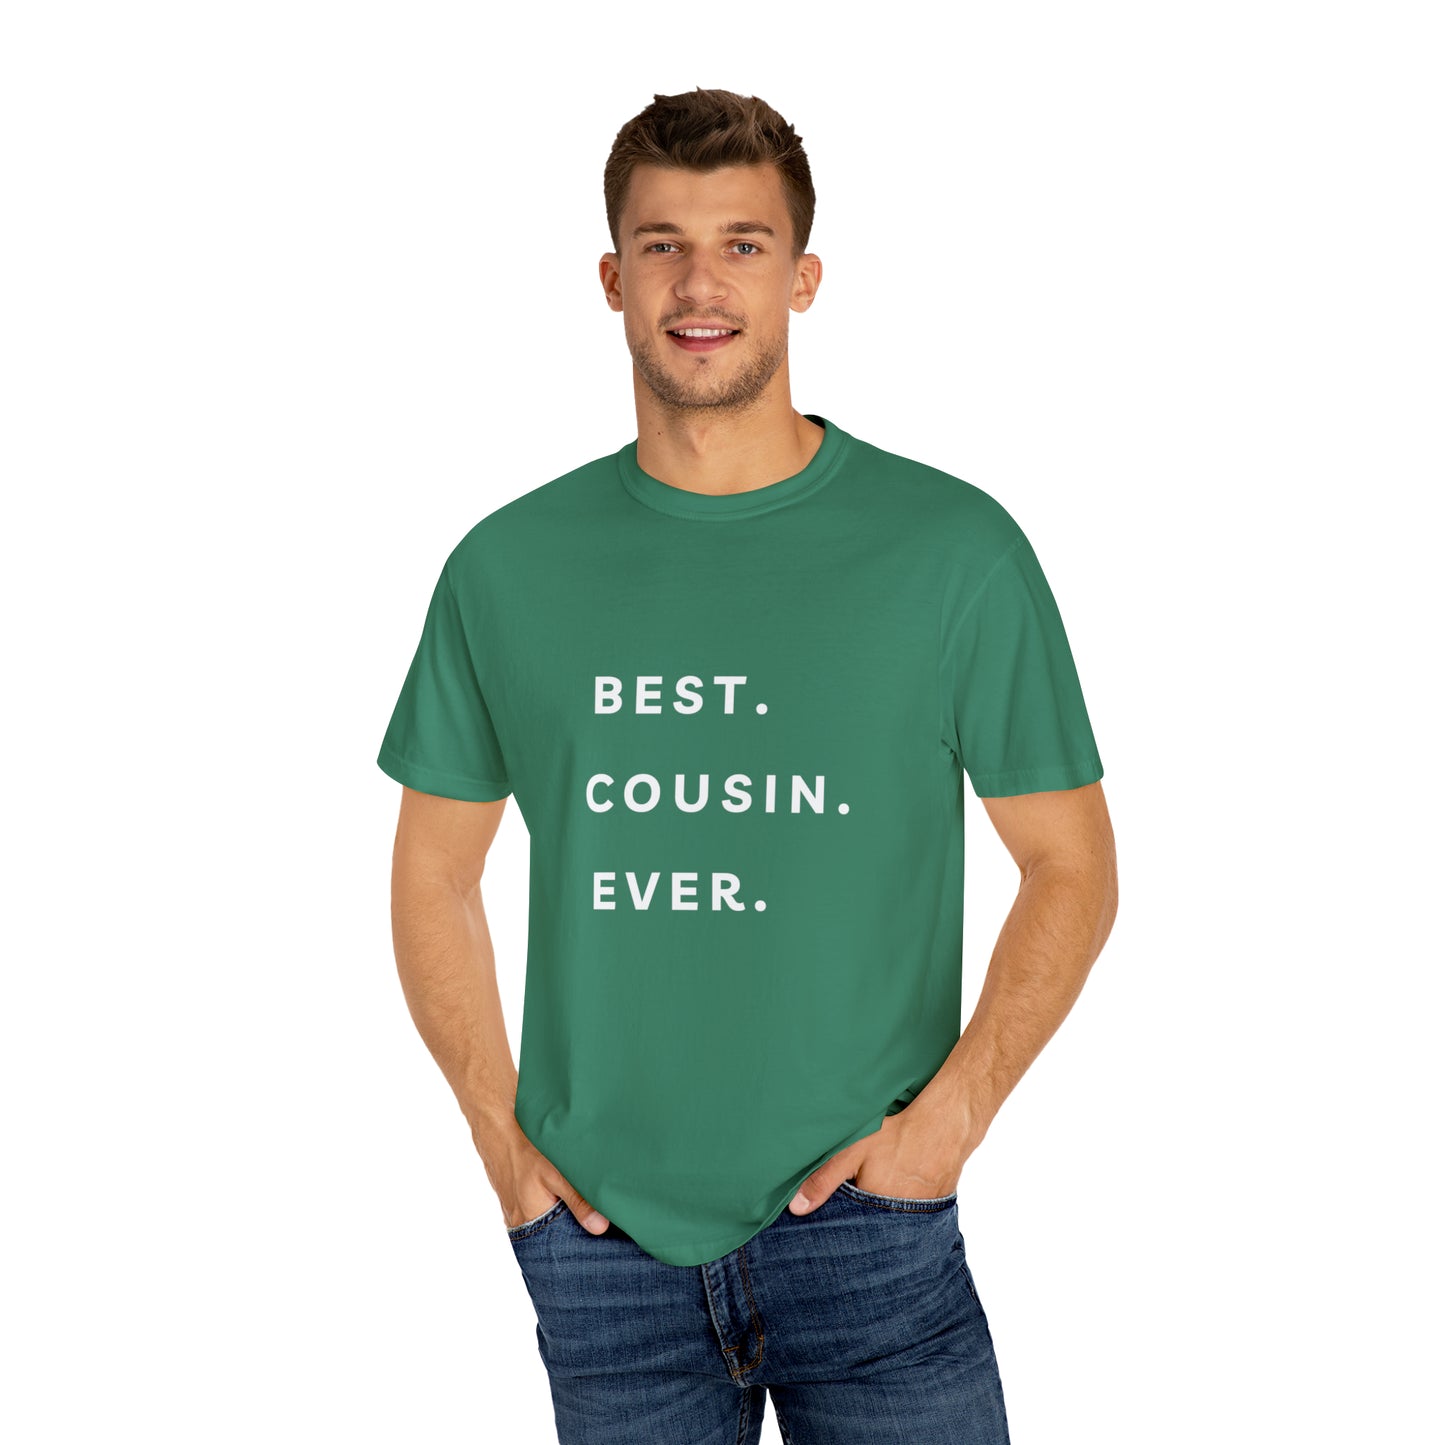 BEST COUSIN EVER T SHIRT Unisex Garment-Dyed T-shirt